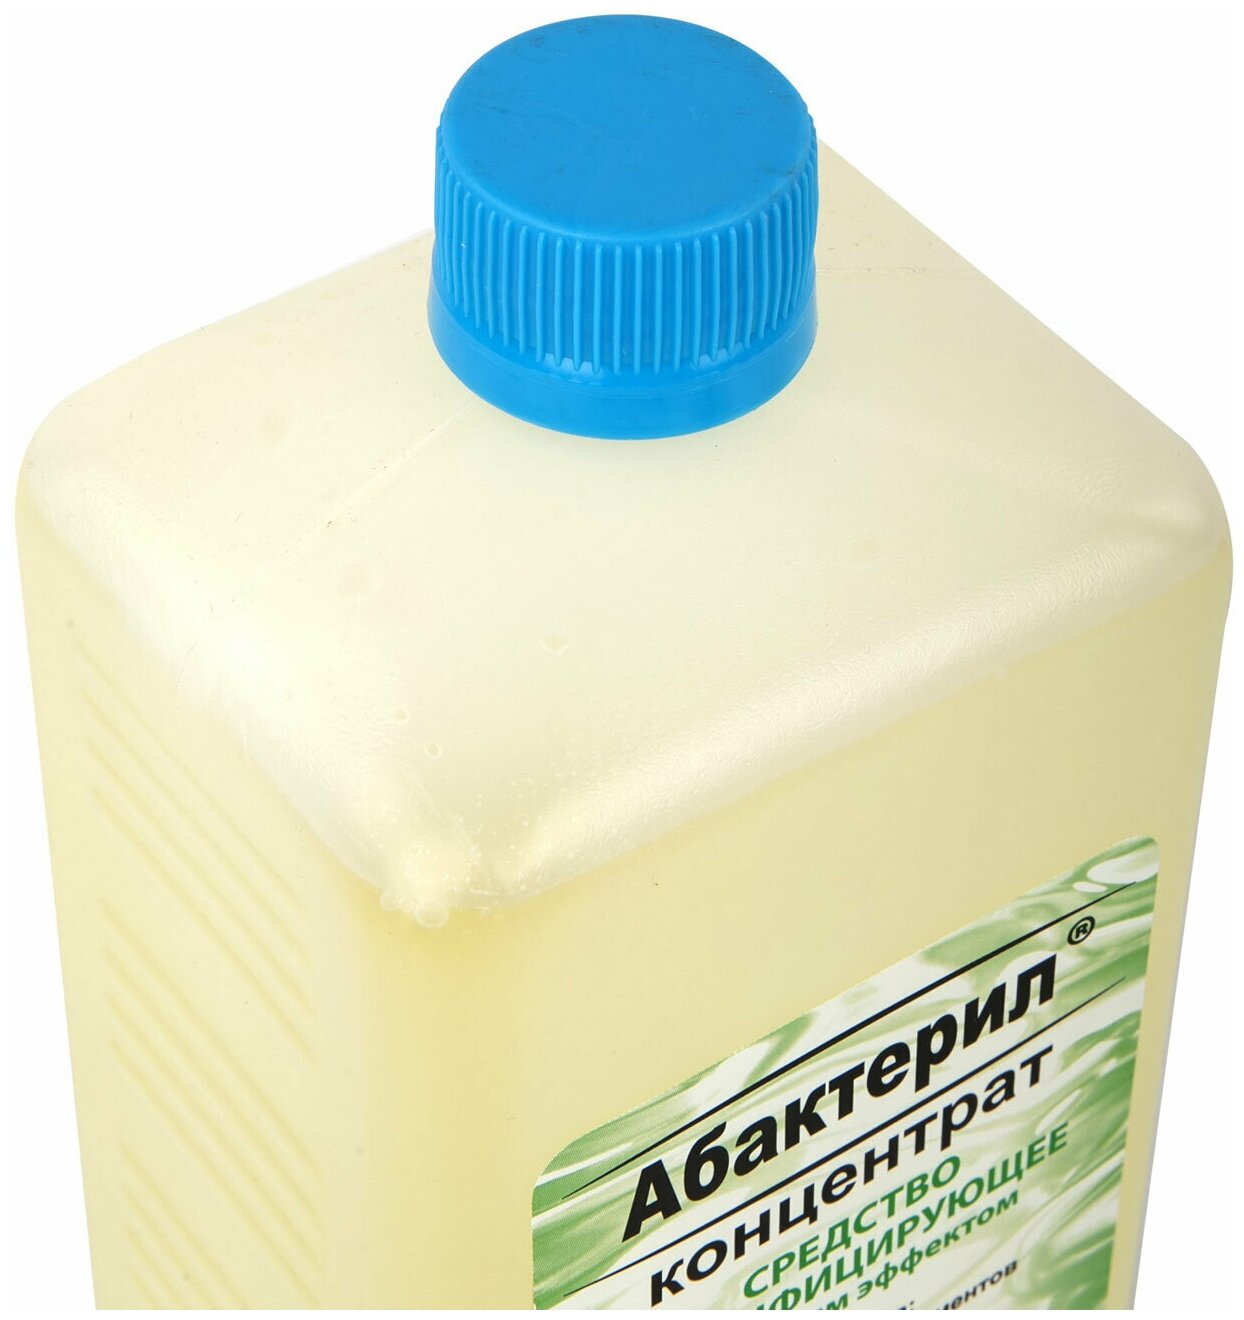 Дезинфицирующее средство Абактерил концентрат, с моющим эффектом, 1 л (АБ-301)